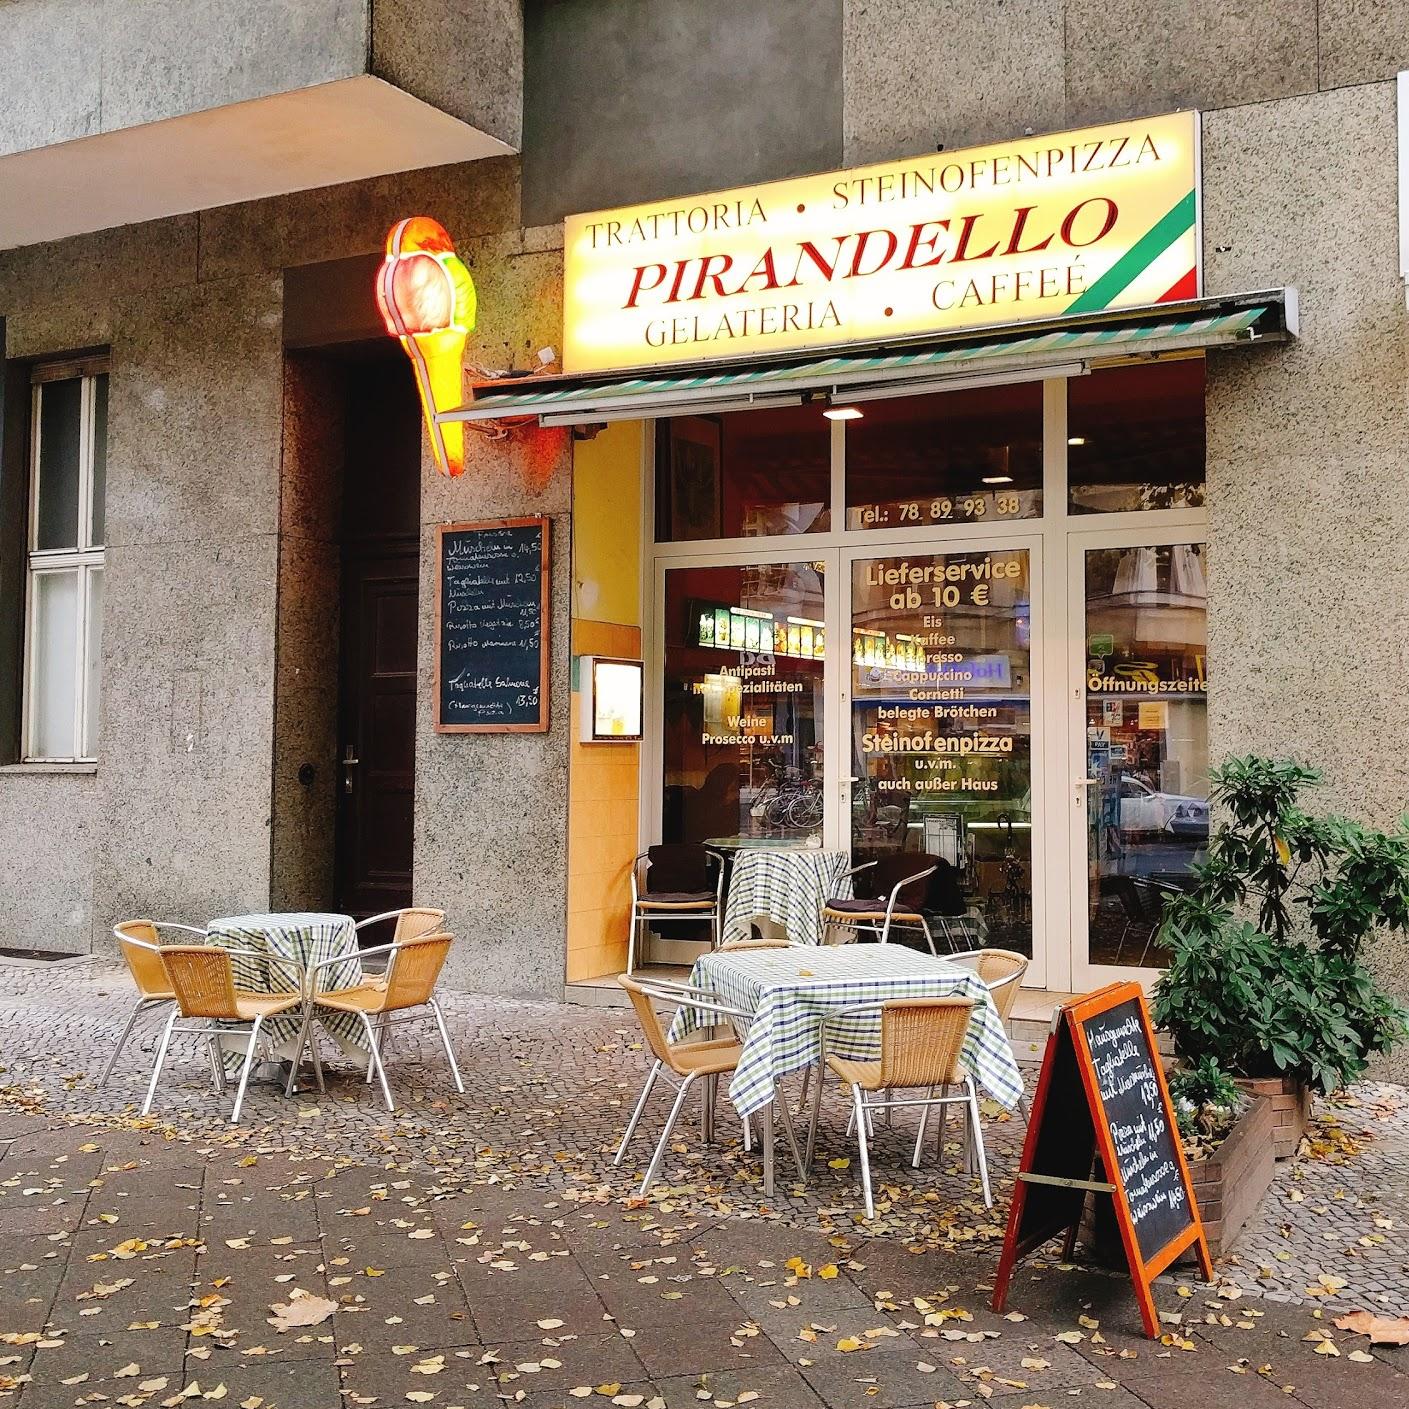 Restaurant "Pirandello Trattoria" in  Berlin